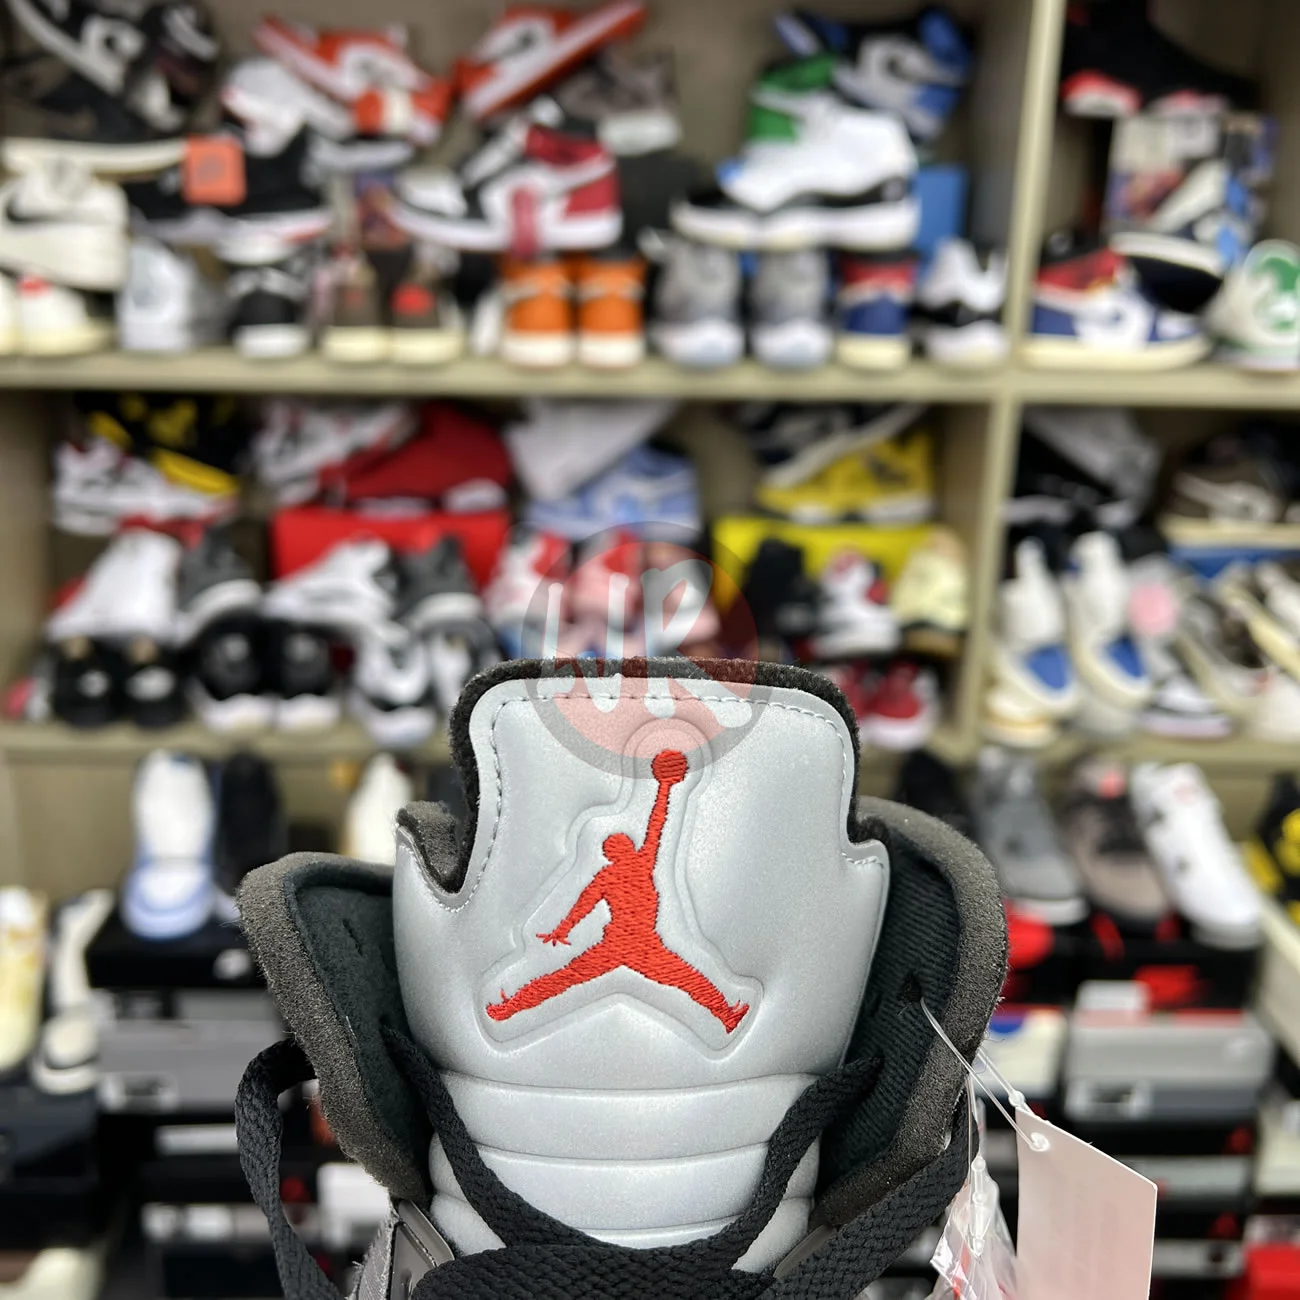 Air Jordan 5 Retro Off White Muslin Ct8480 001 Ljr Sneakers (8) - bc-ljr.com